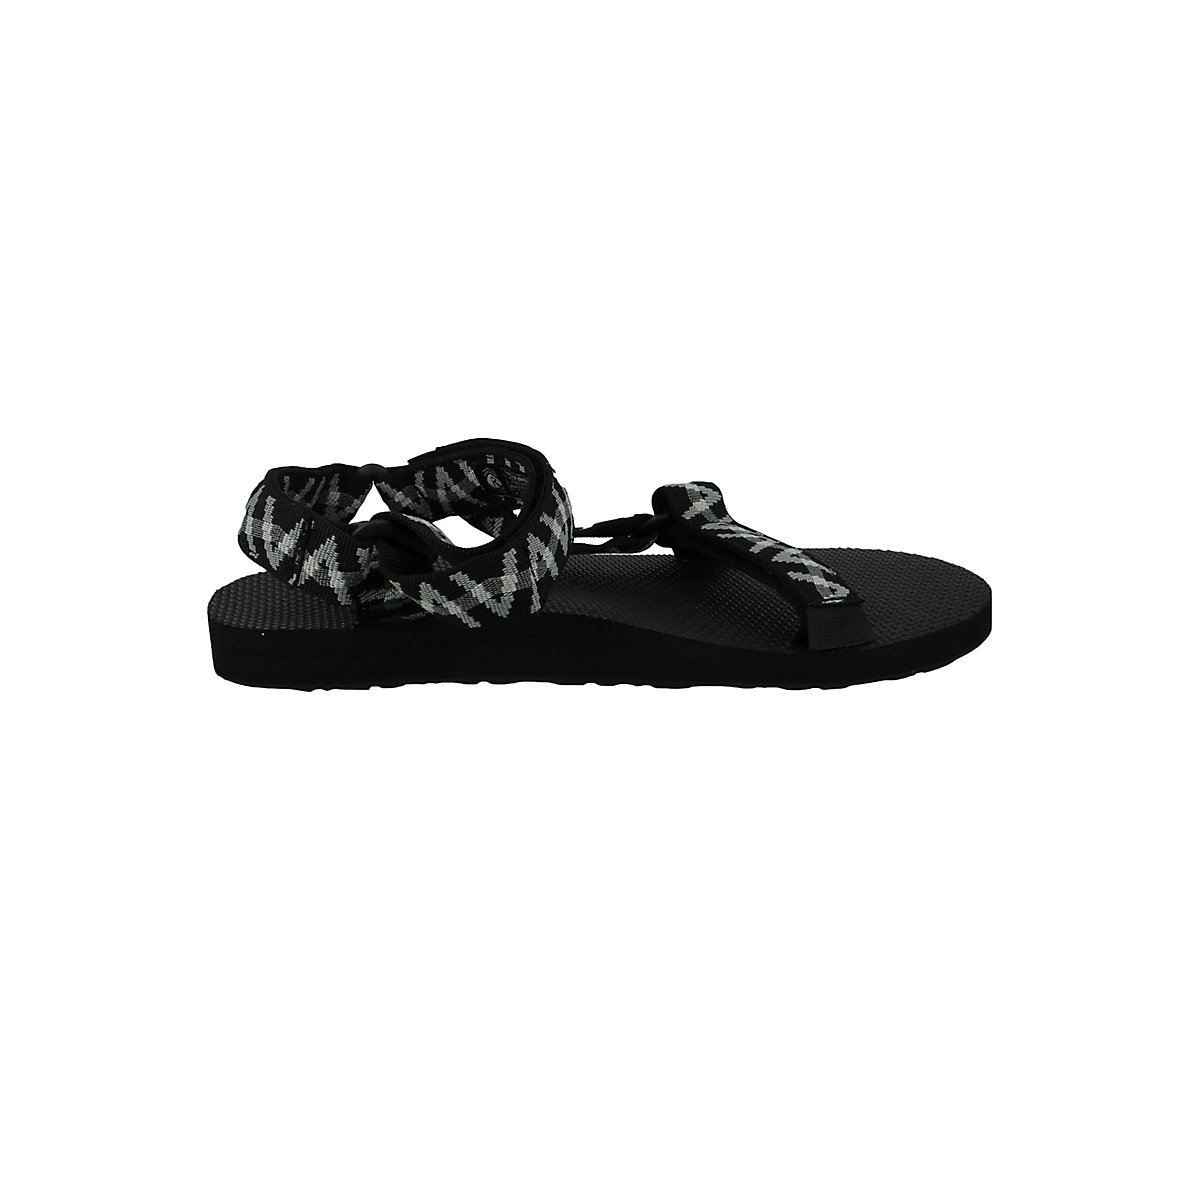 Teva Herren Trekking Sandalen Wanderschuhe Original Universal 1004006 Schwarz LSBG Black/Grey Textil mit EVA Klassische Sandalen schwarz